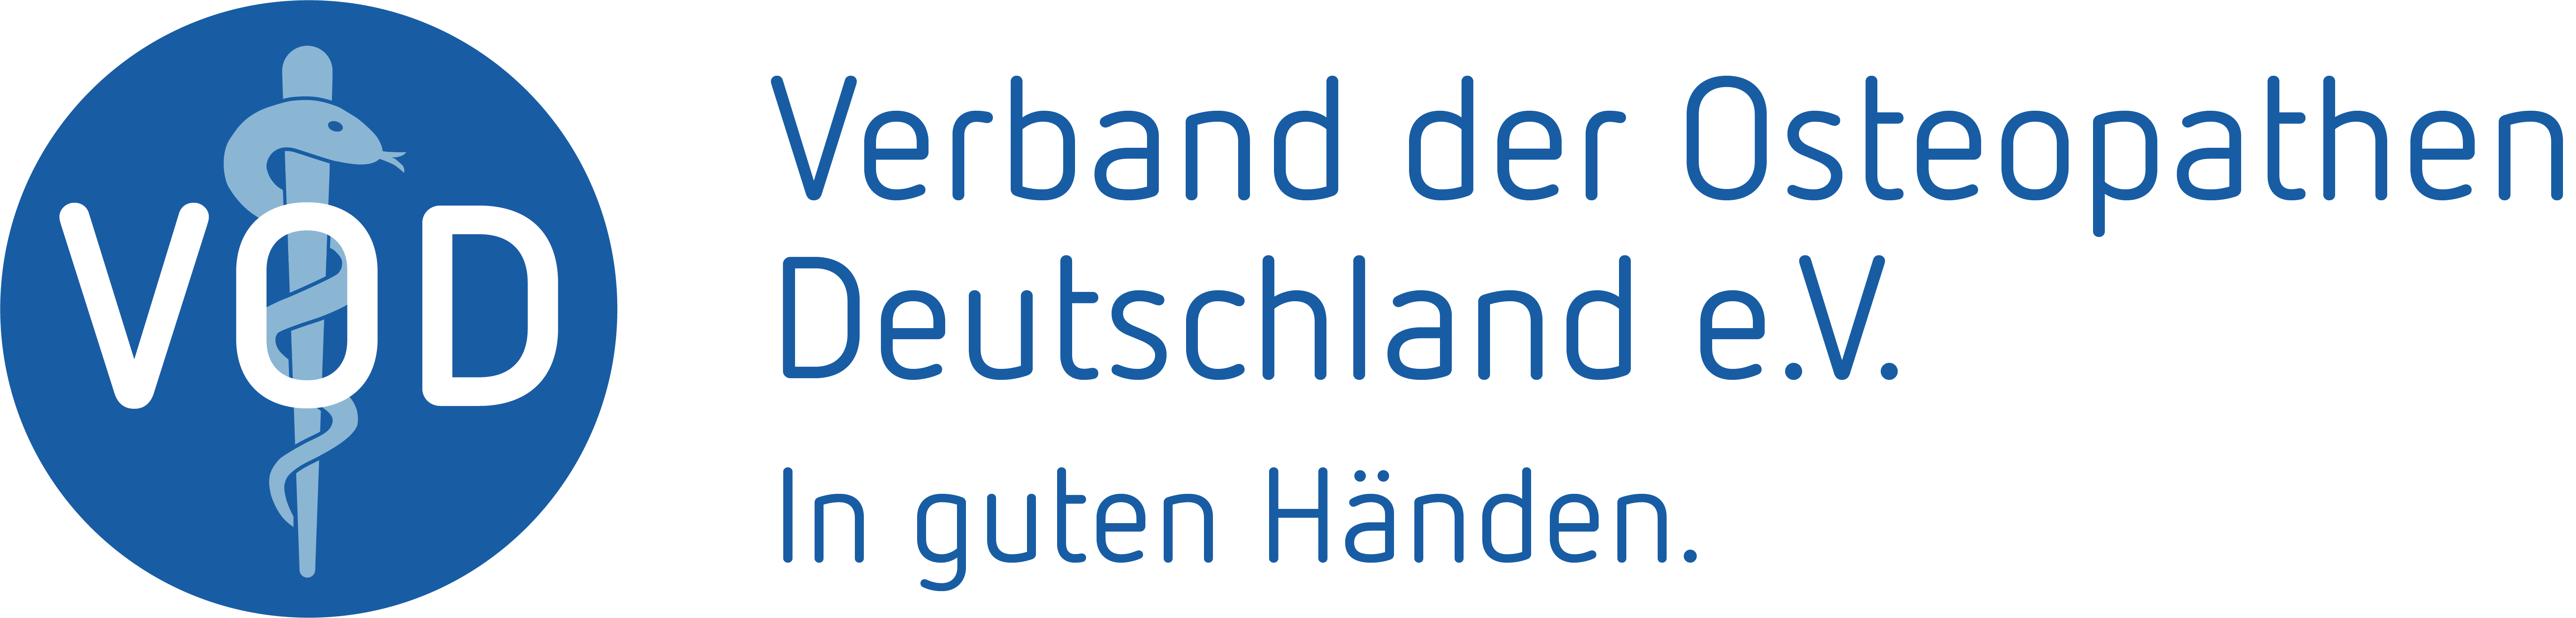 Verband der Osteopathen Deutschland e.V. (VOD) Logo